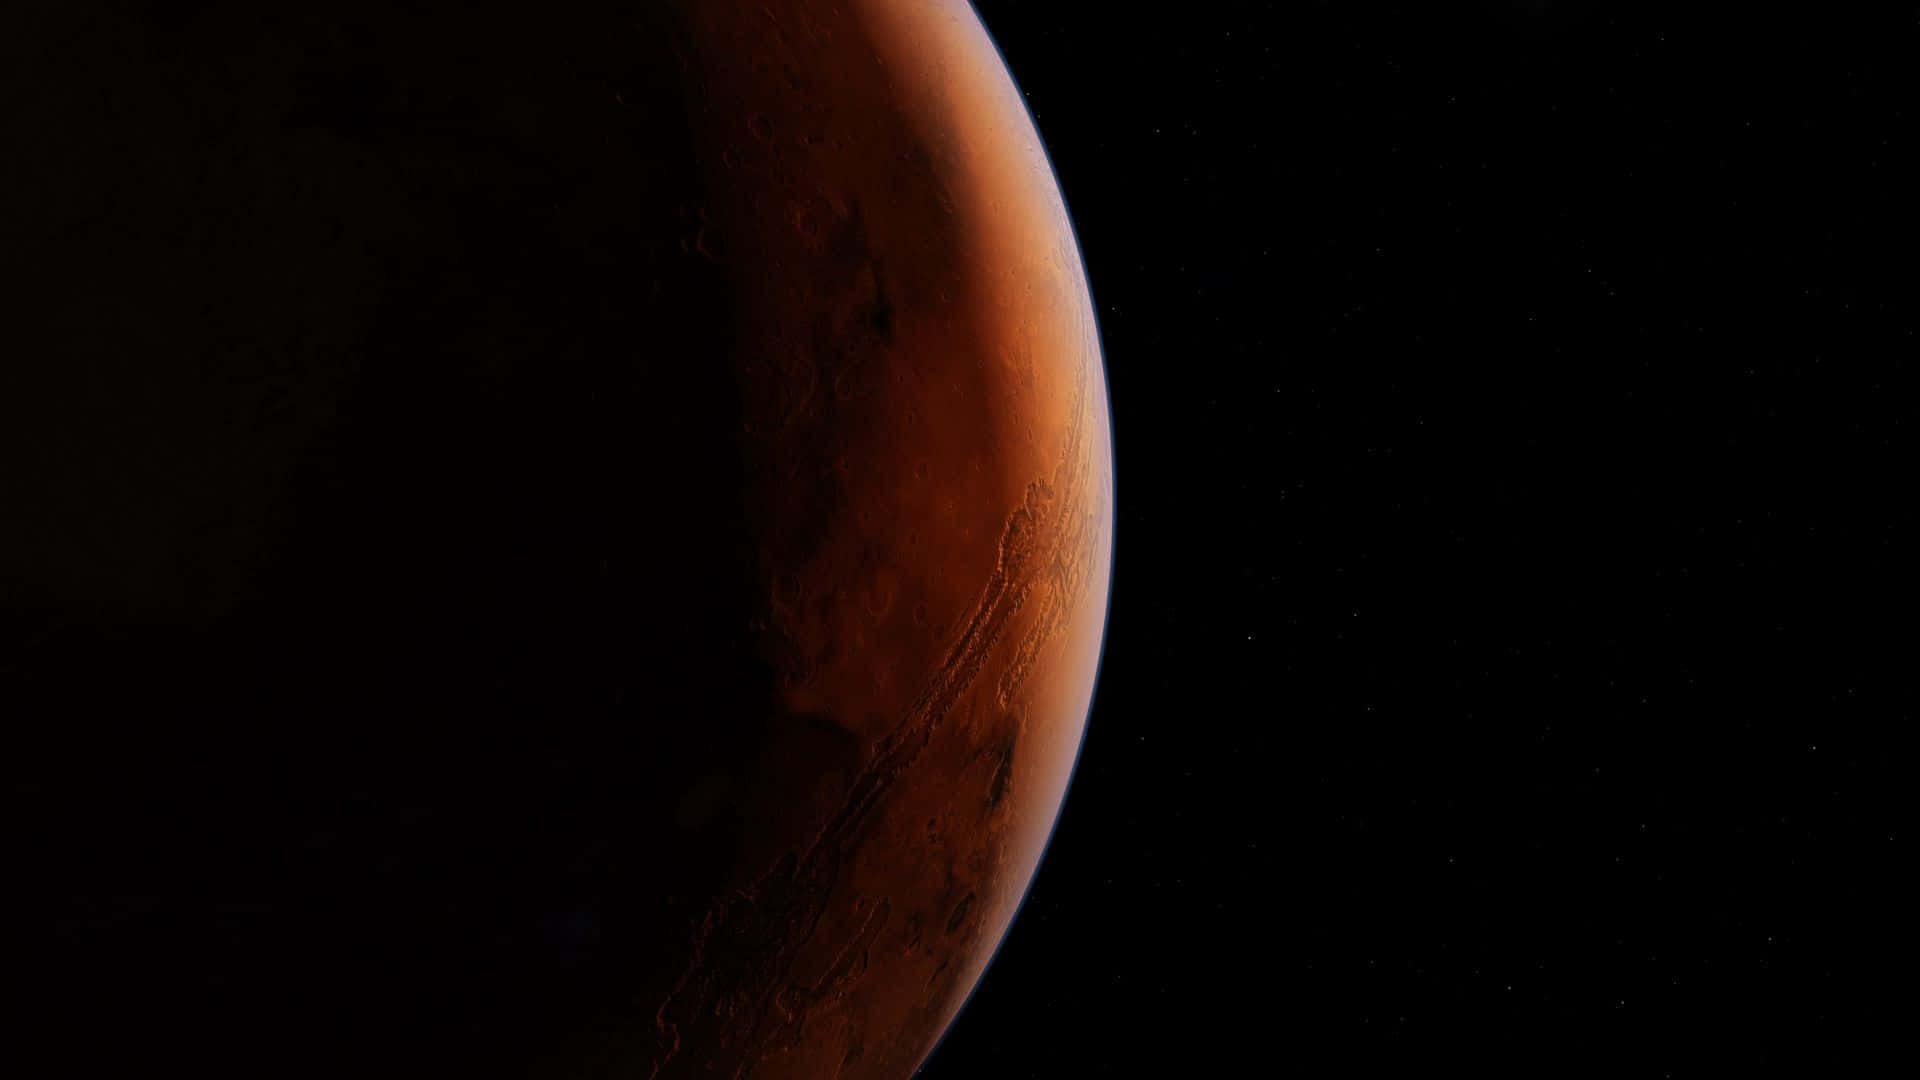 Oplaneta Vermelho - Marte.